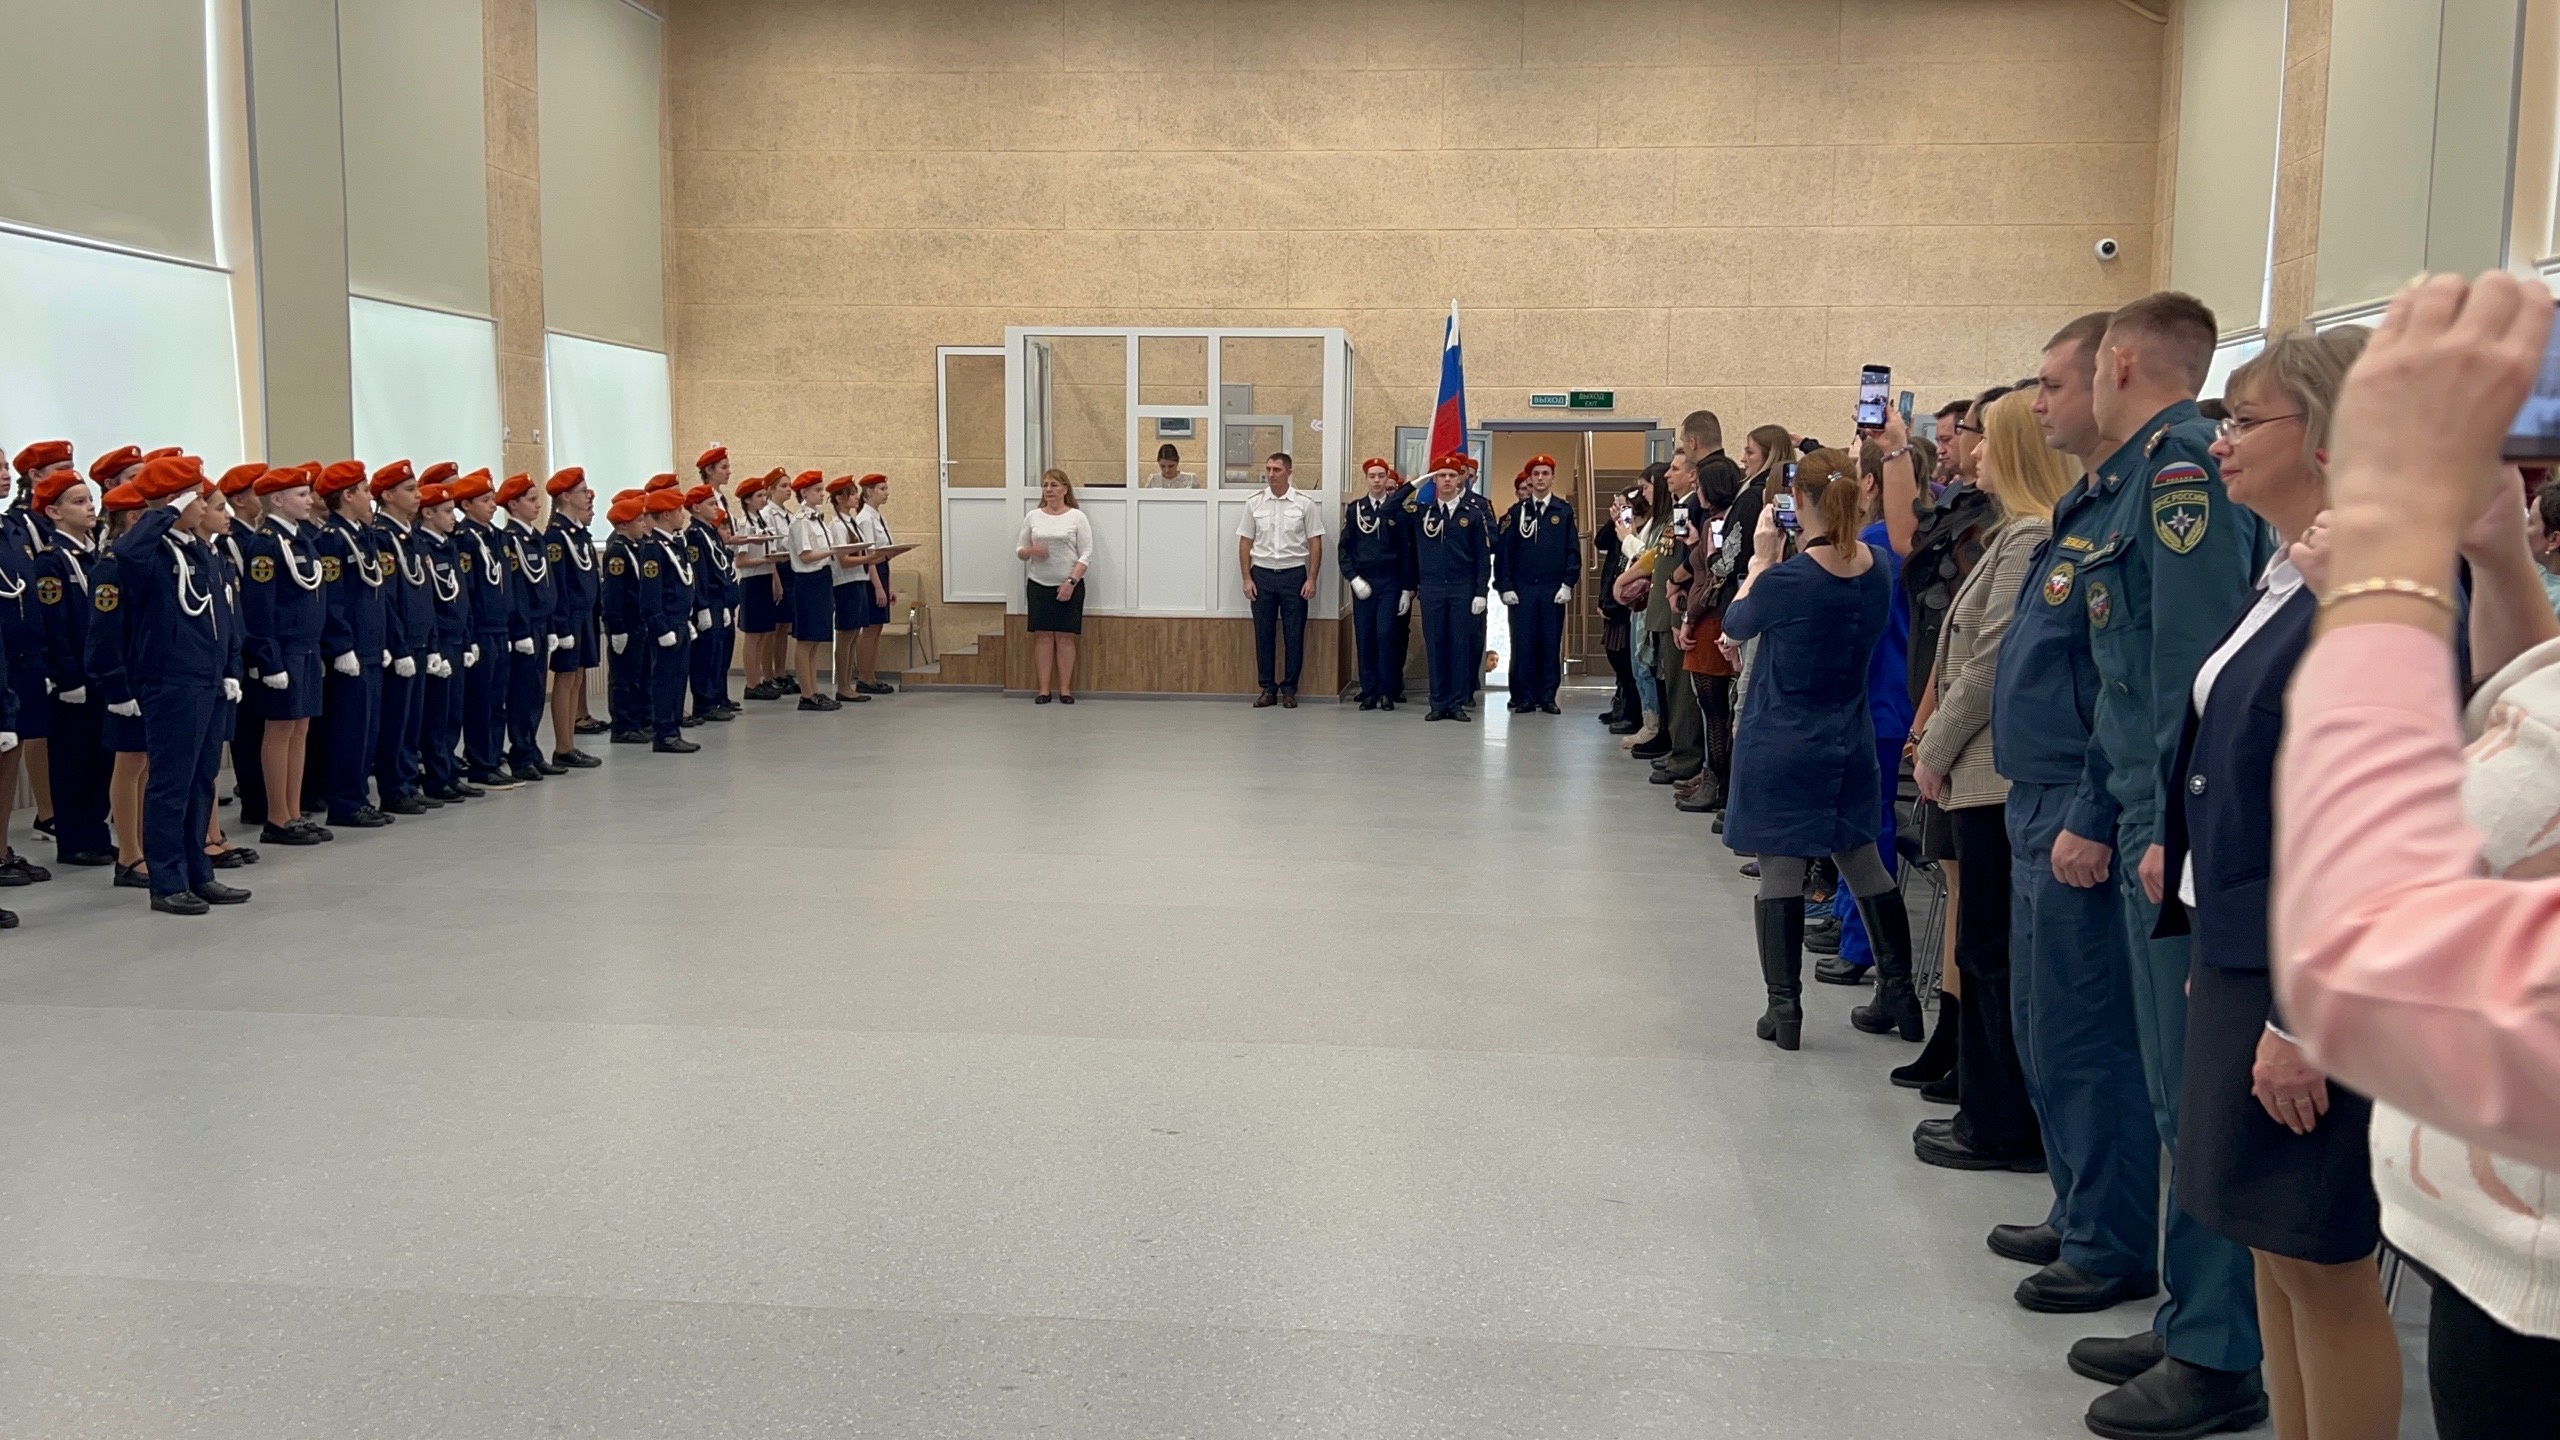 Сегодня пятиклассники кадеты произнесли торжественную клятву в особенный день – день Конституции Российской Федерации.